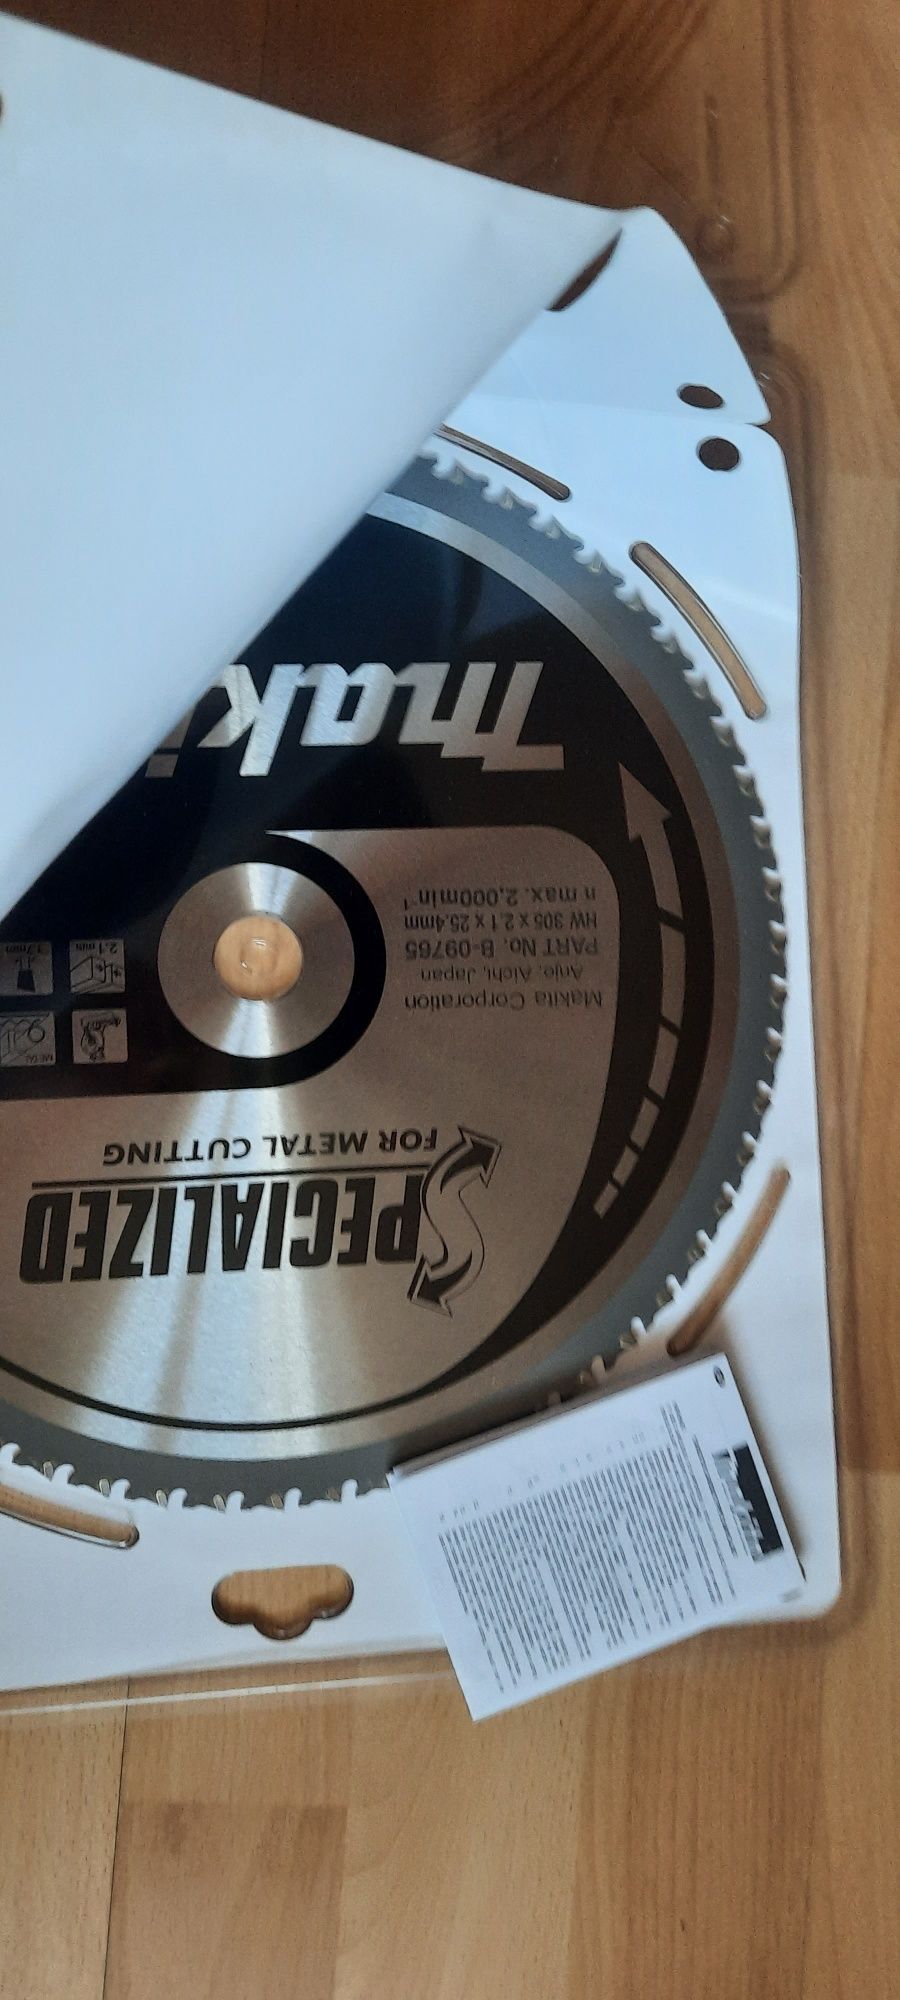 Пильный диск по стали Makita b-09765